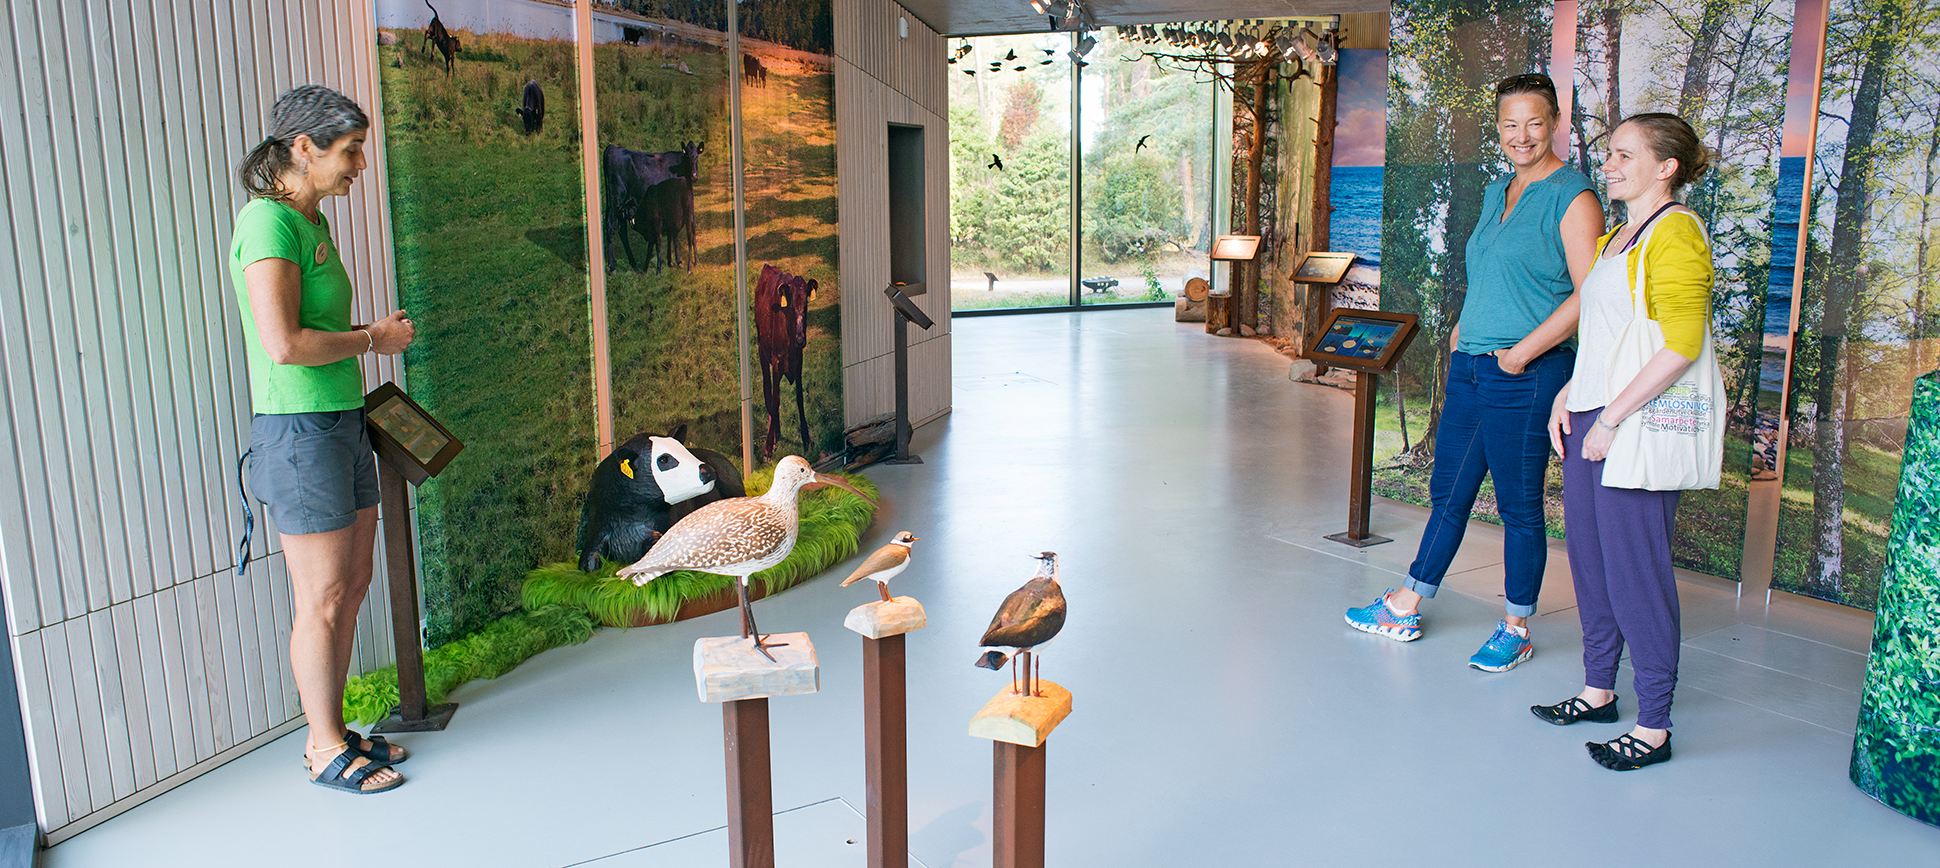 Naturvägledare guidar besökare bland träsnidade fåglar och kalv i utställningen i besökscentret naturum Trollskogen, på norra Öland.Träsnidade fåglar och kalv i utställningen i besökscentret naturum Trollskogen, på norra Öland.